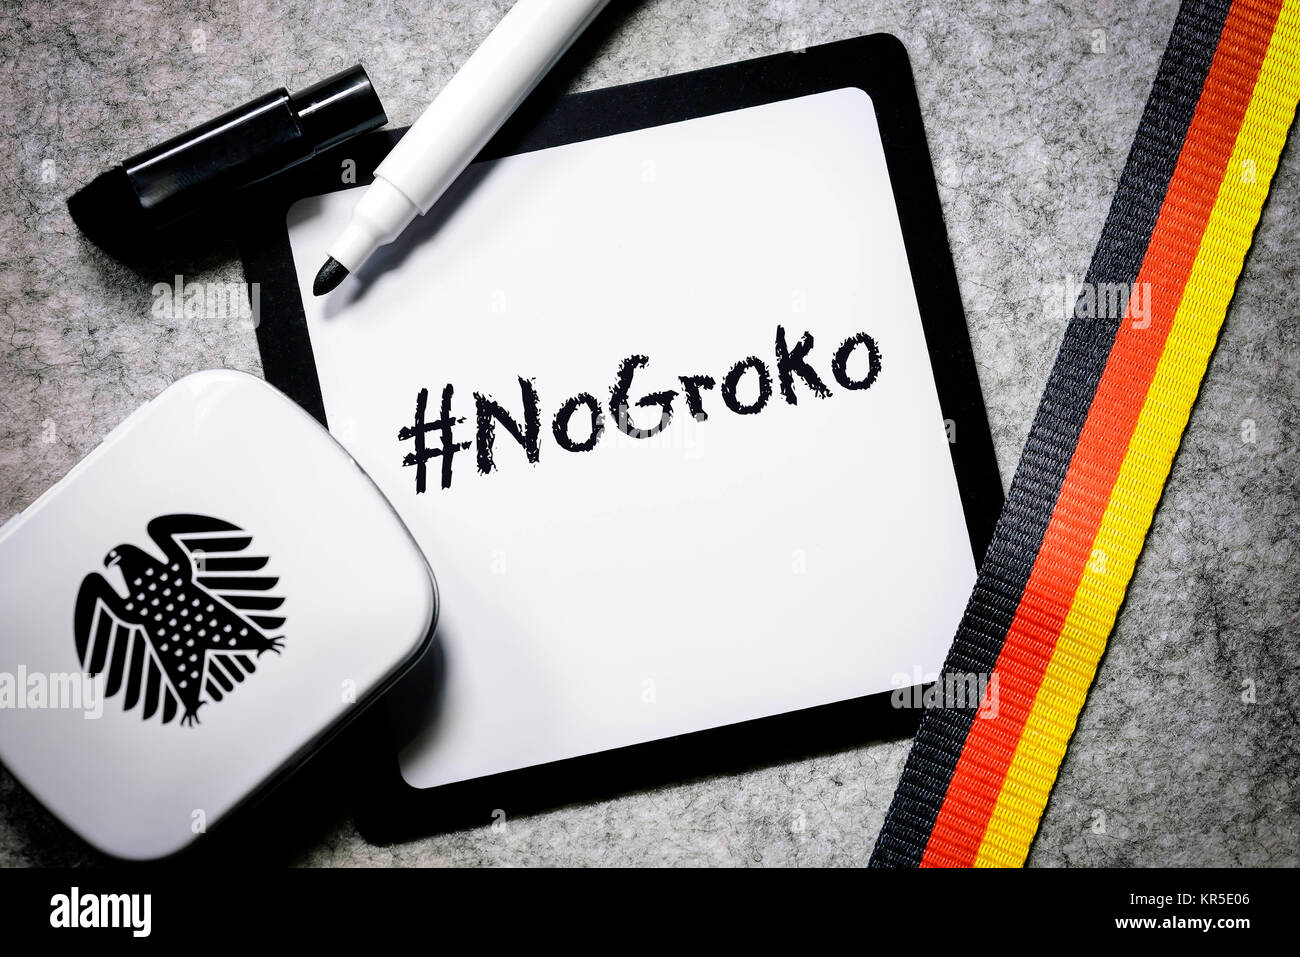 Writing board with the label #NoGroko, opposition against the grand coalition, Schreibtafel mit der Aufschrift #NoGroko, Widerstand gegen die Große Ko Stock Photo